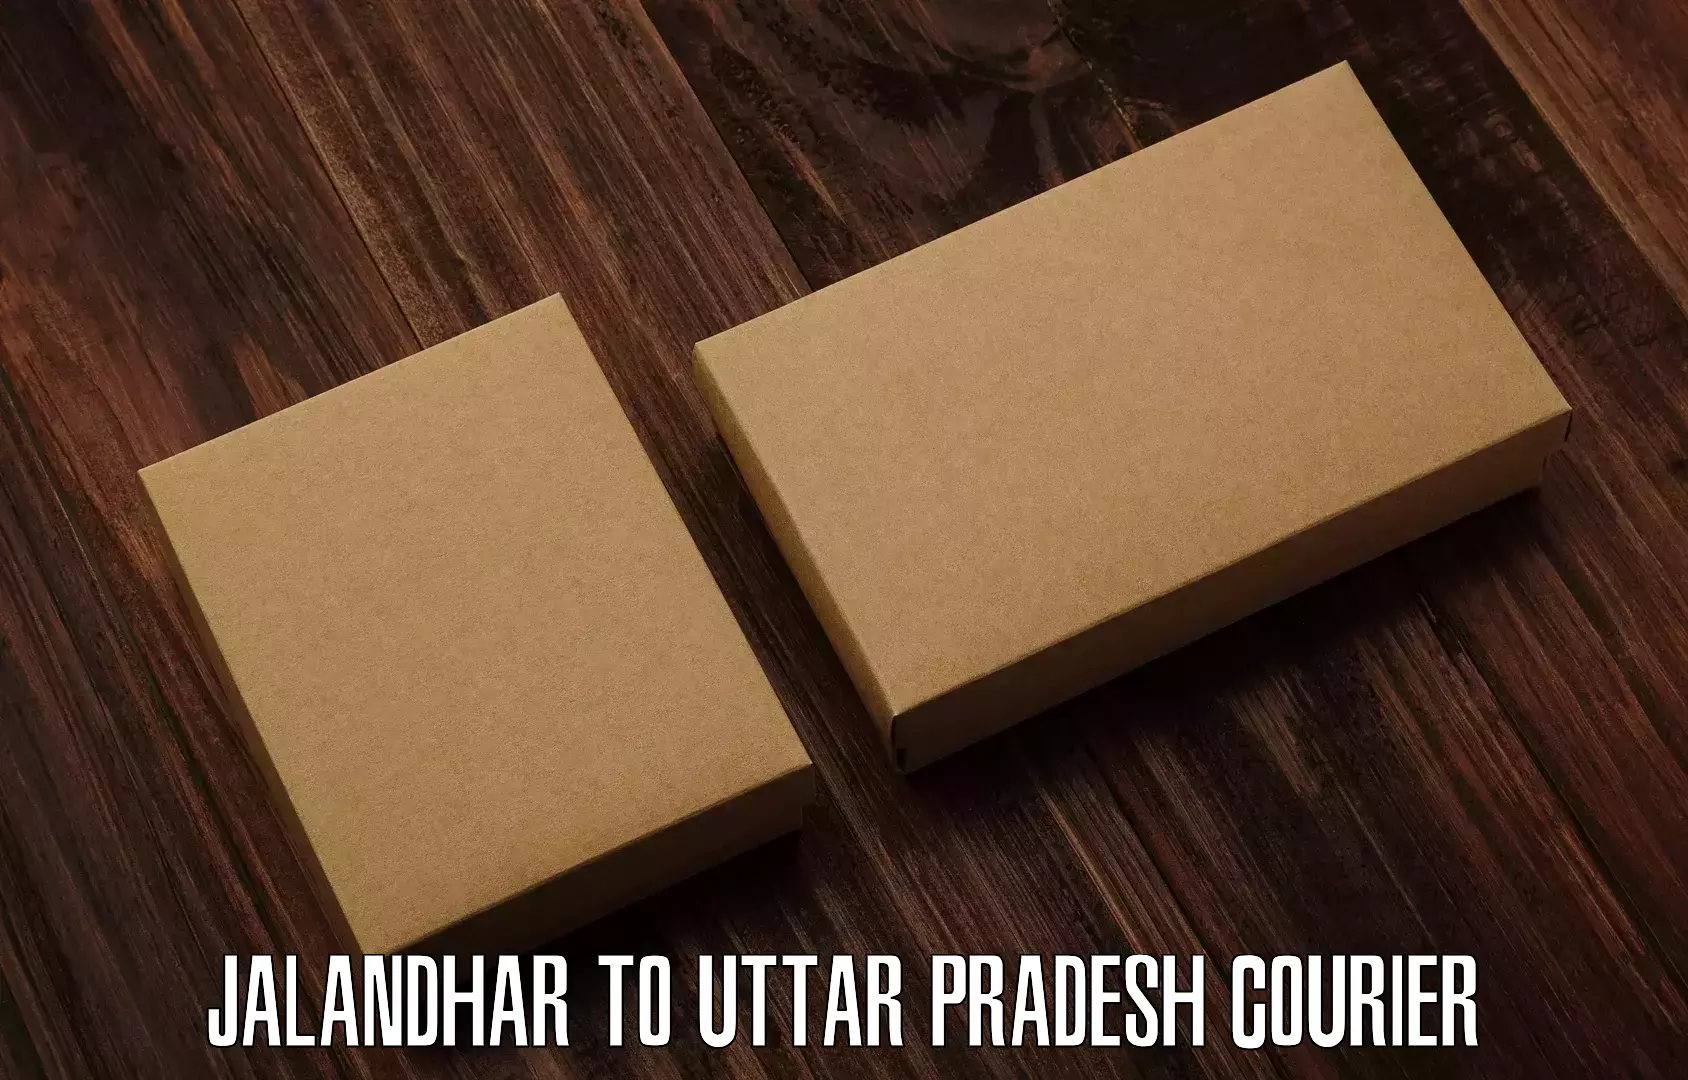 Next day courier Jalandhar to Banaras Hindu University Varanasi